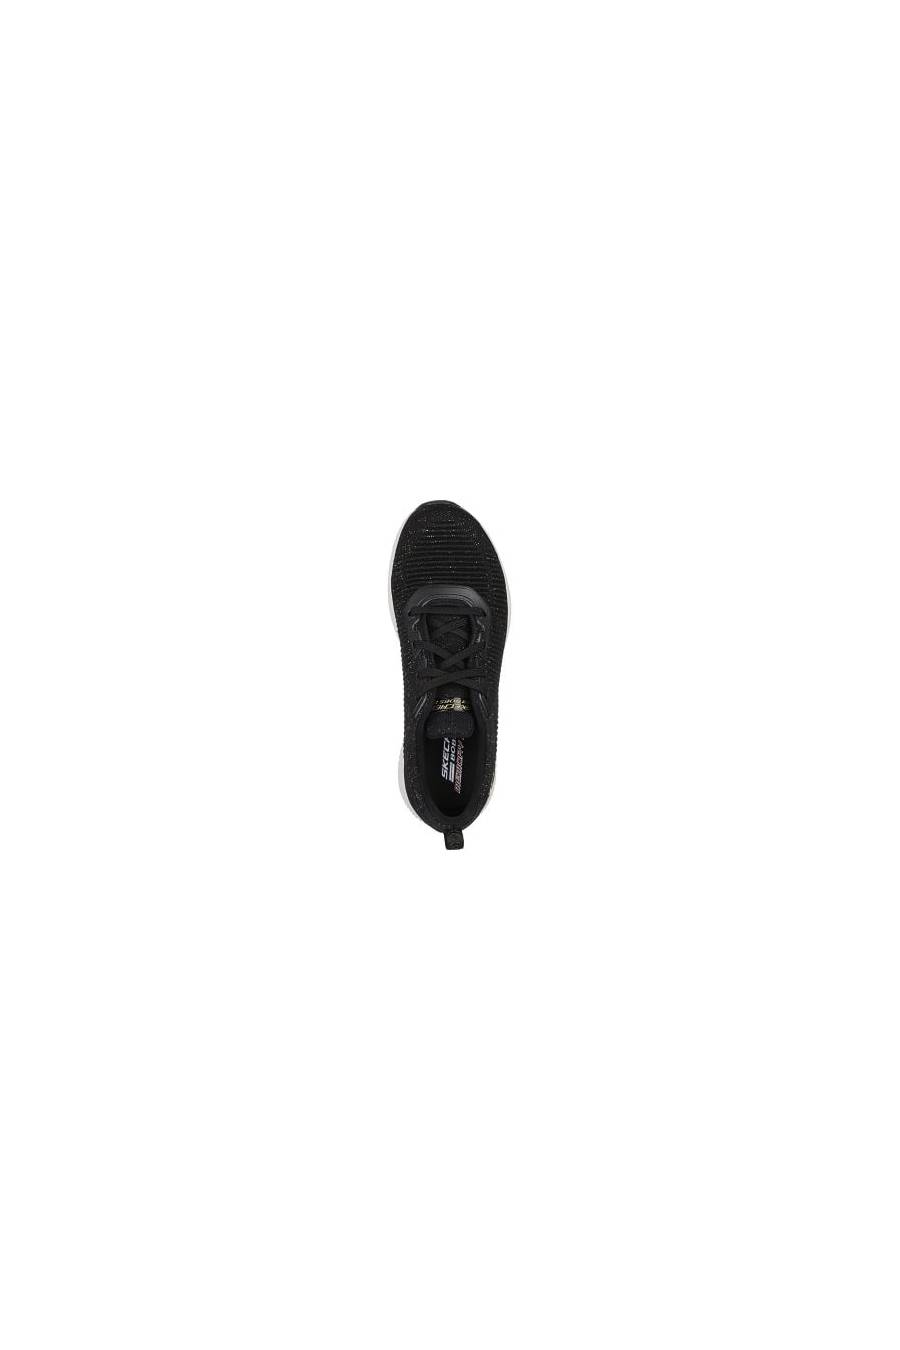 Zapatillas Skechers BOBS SQUAD - TOTAL GLAM 32502-BKMT